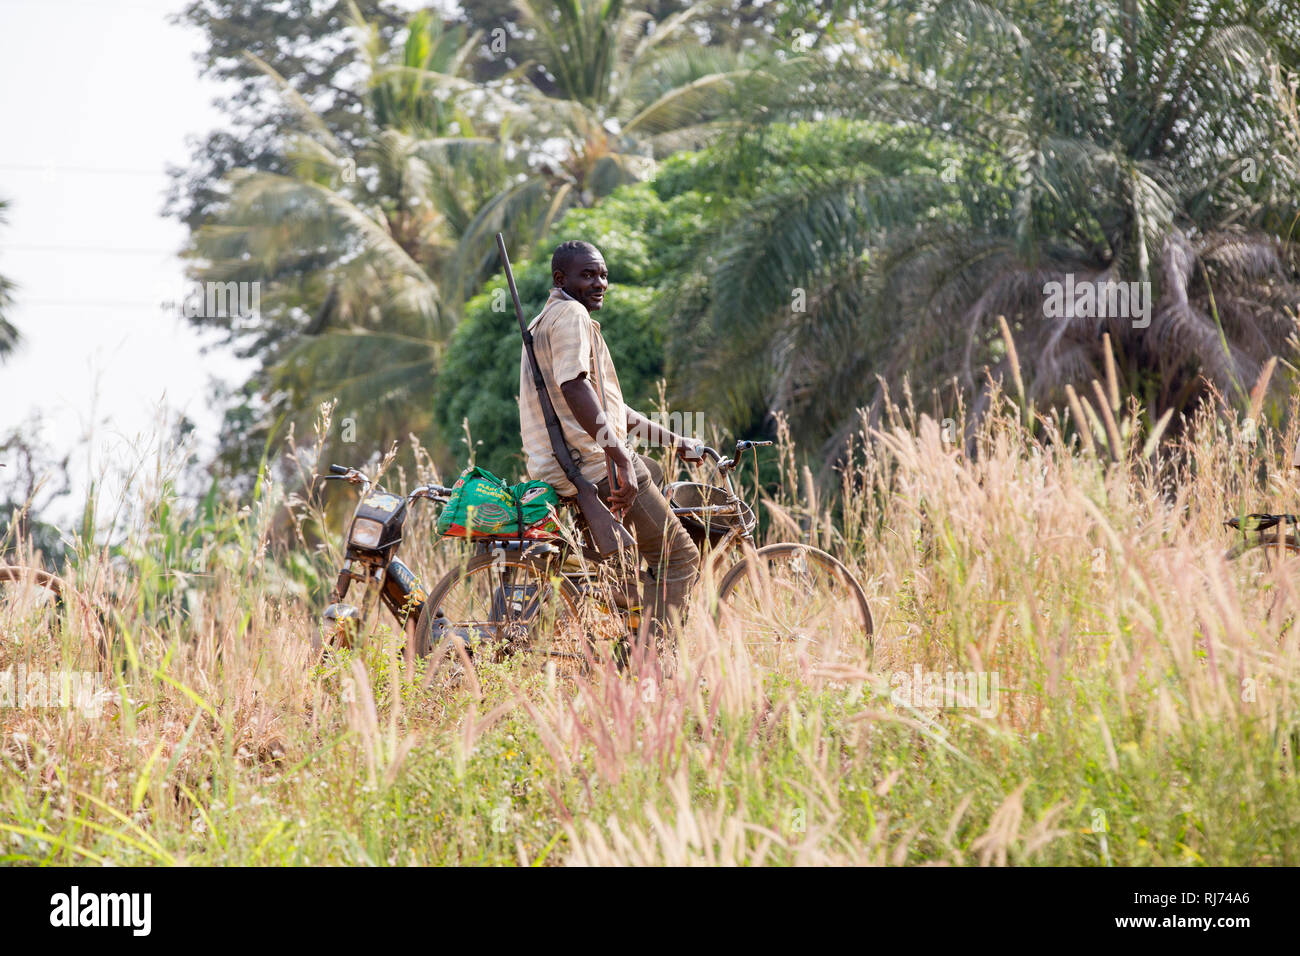 Village de Karfiguela, Banfora, région de Cascades, Burkina Faso, 6 décembre 2016; chasseur sur son vélo sur le chemin de la recherche de viande de brousse. Banque D'Images